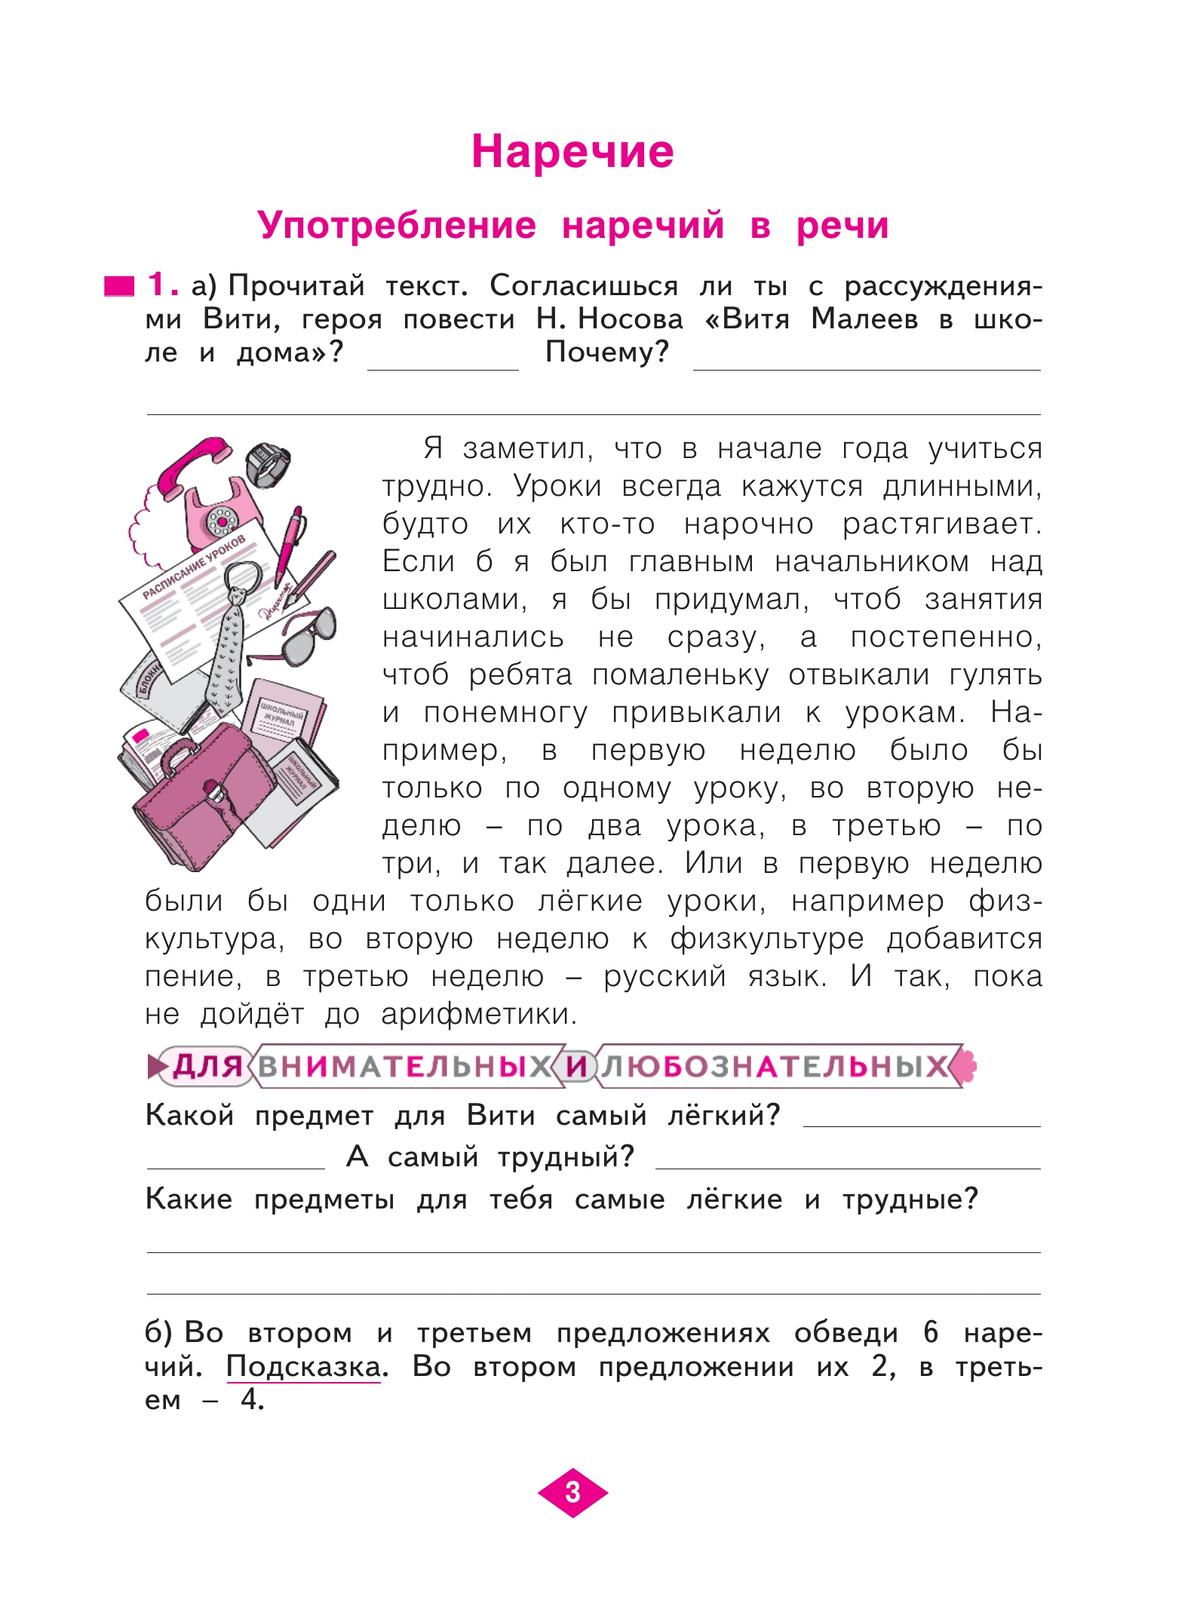 Русский язык. Рабочая тетрадь. 4 класс. В 4-х частях. Часть 4 3